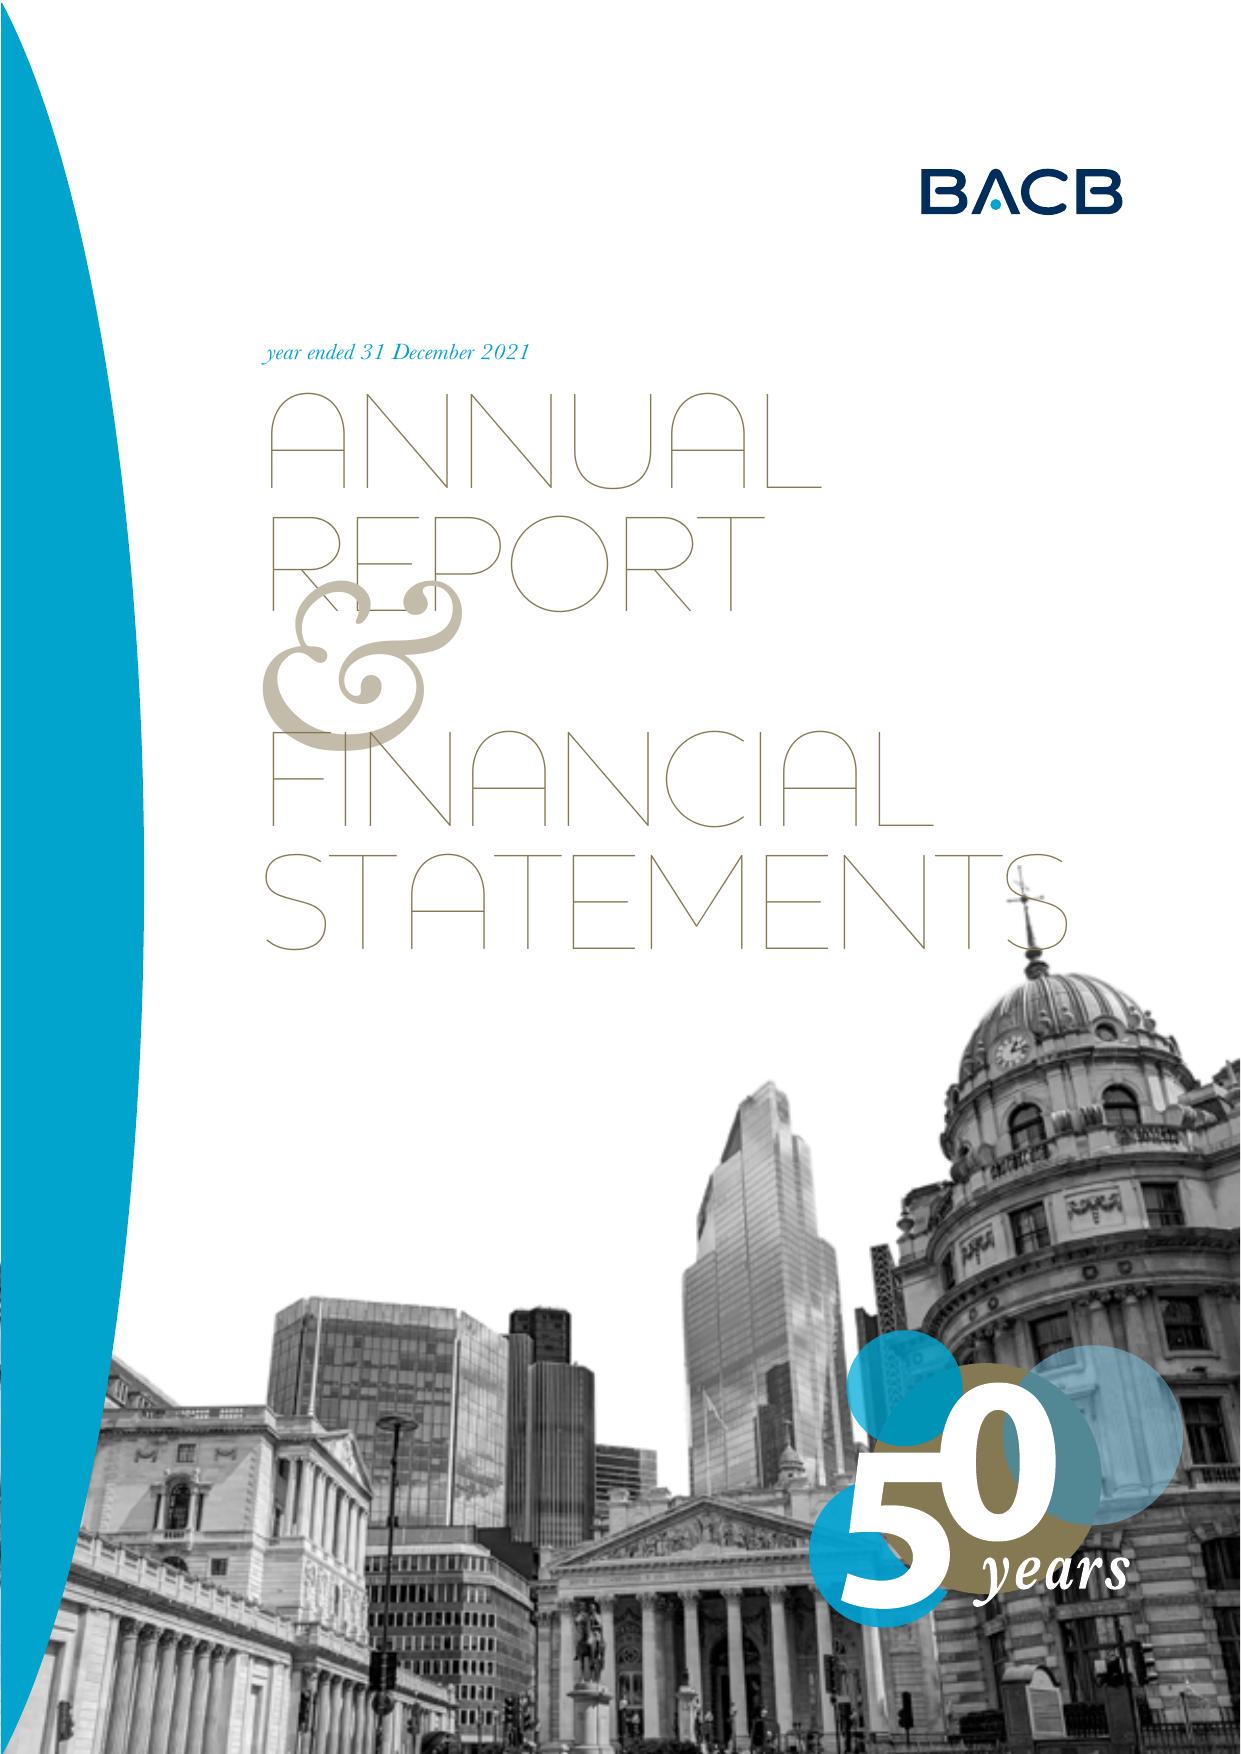 ROMANS 2021 Annual Report